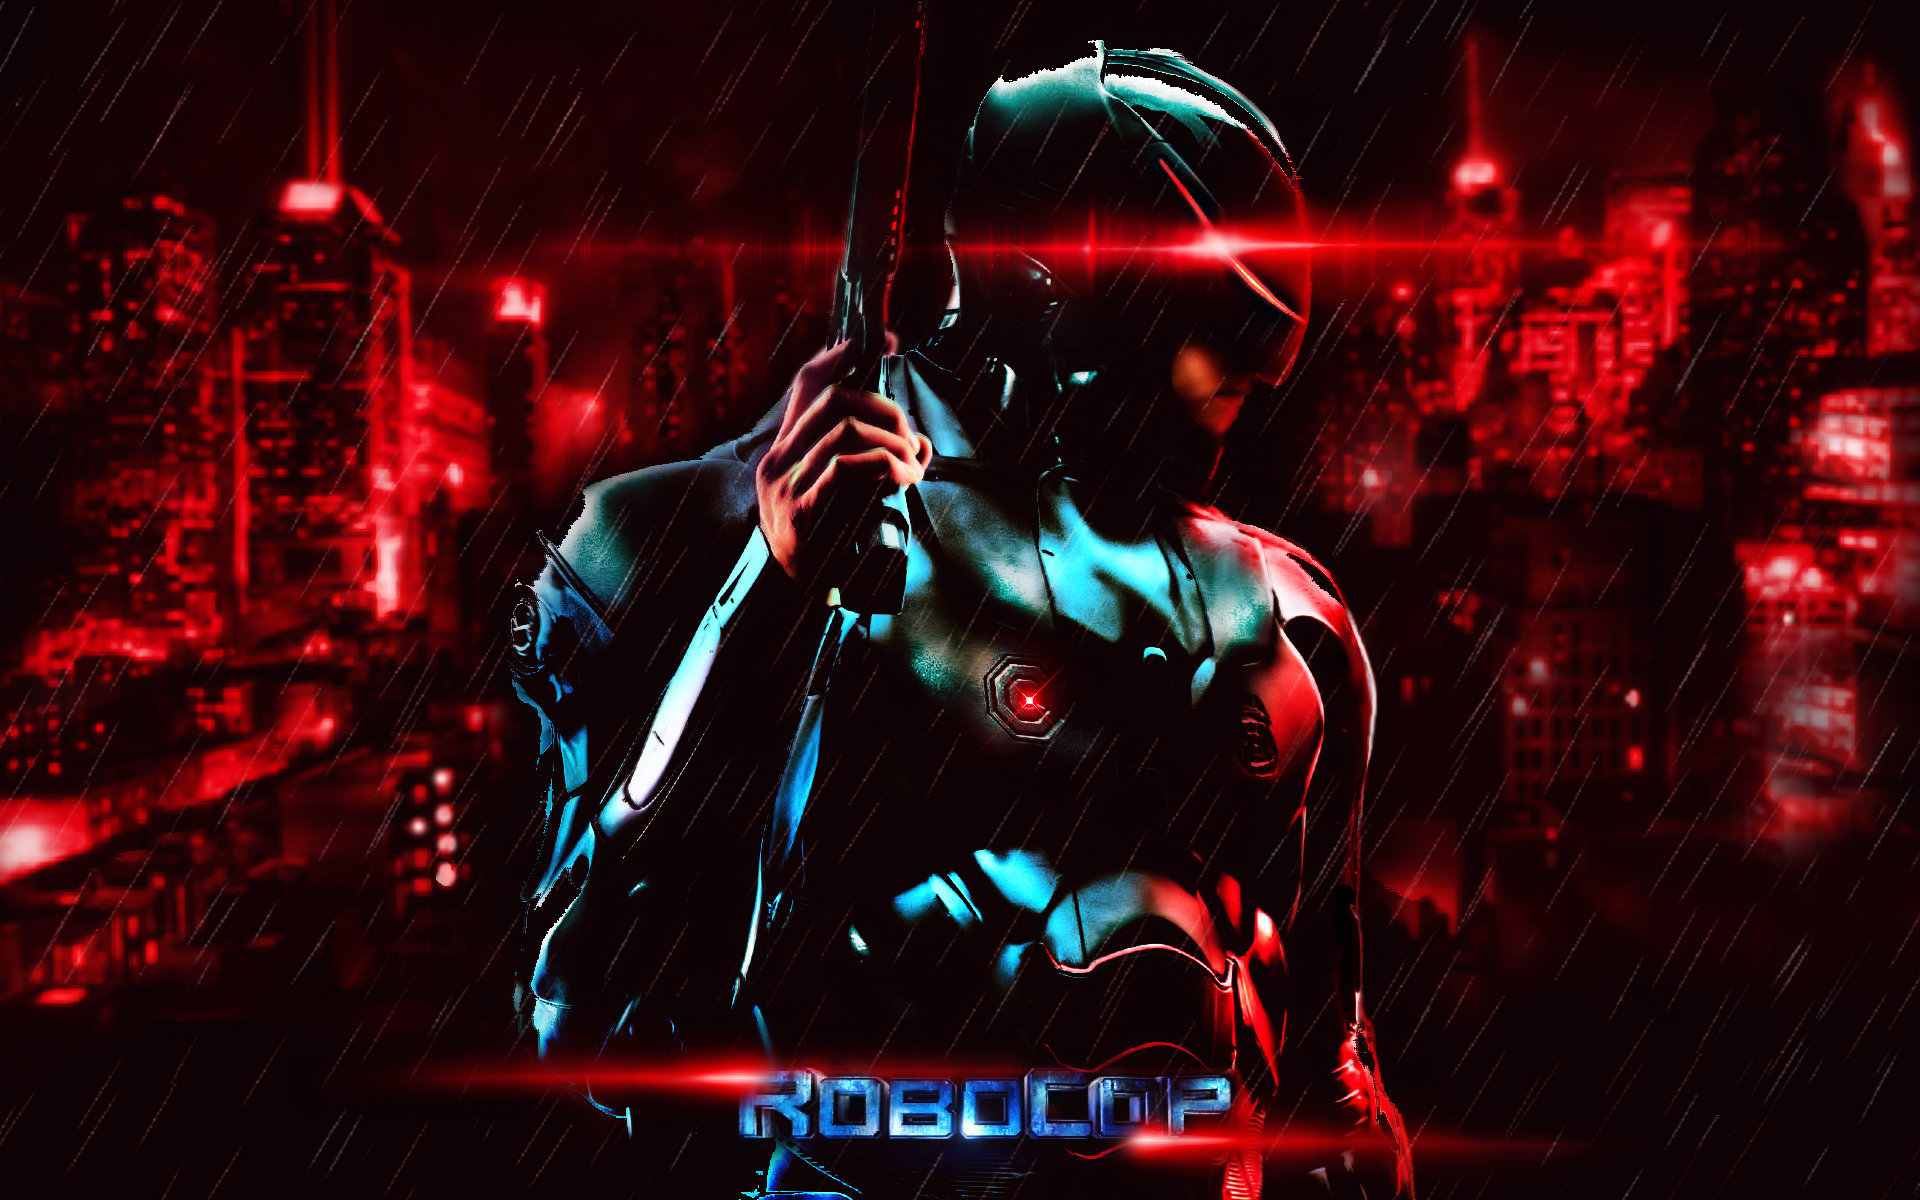 Best Robocop (2014) wallpaper ID:497765 for High Resolution hd 1920x1200 desktop